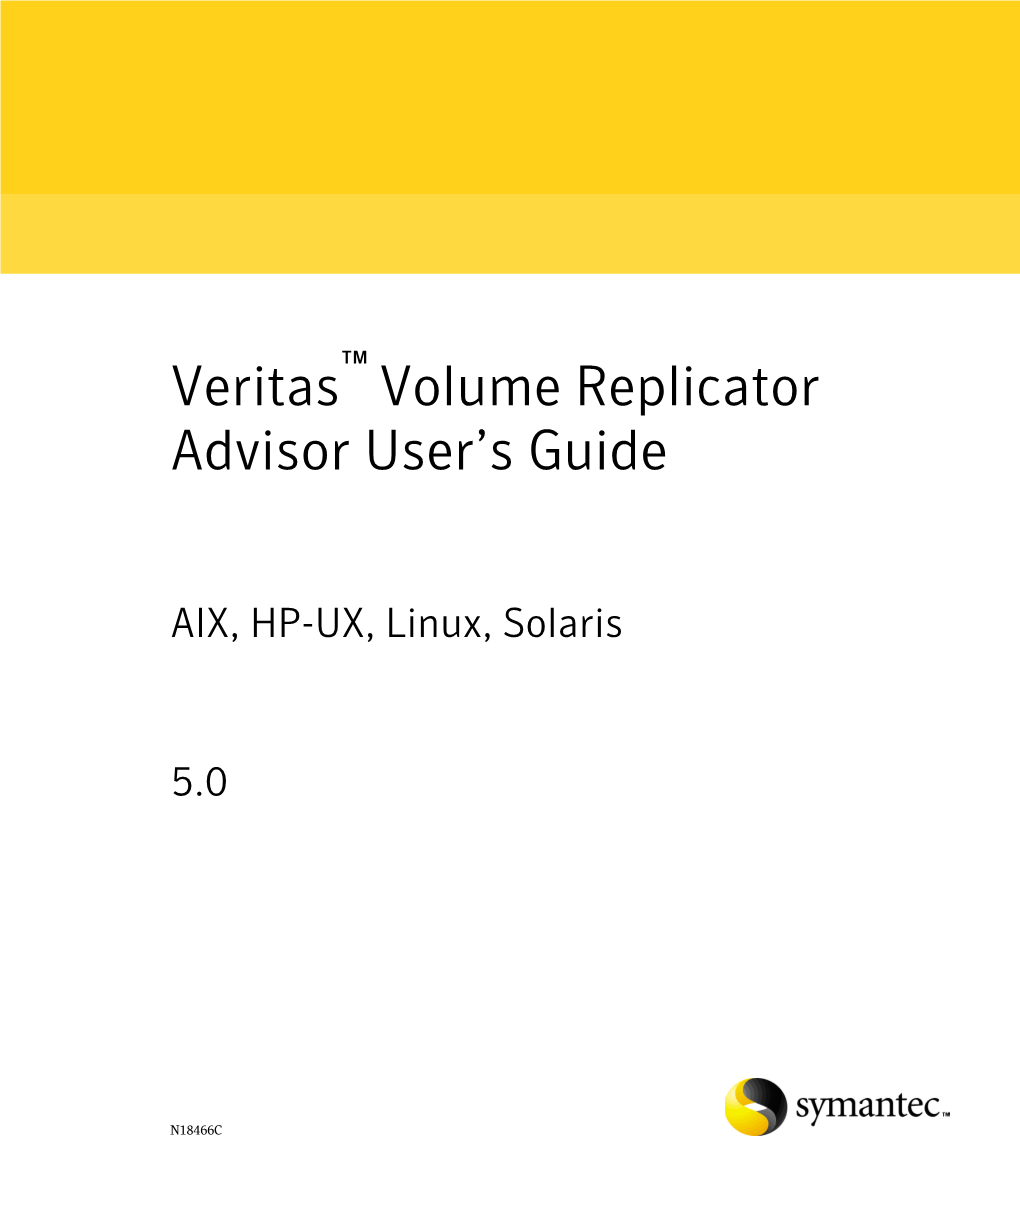 Volume Replicator Advisor User's Guide